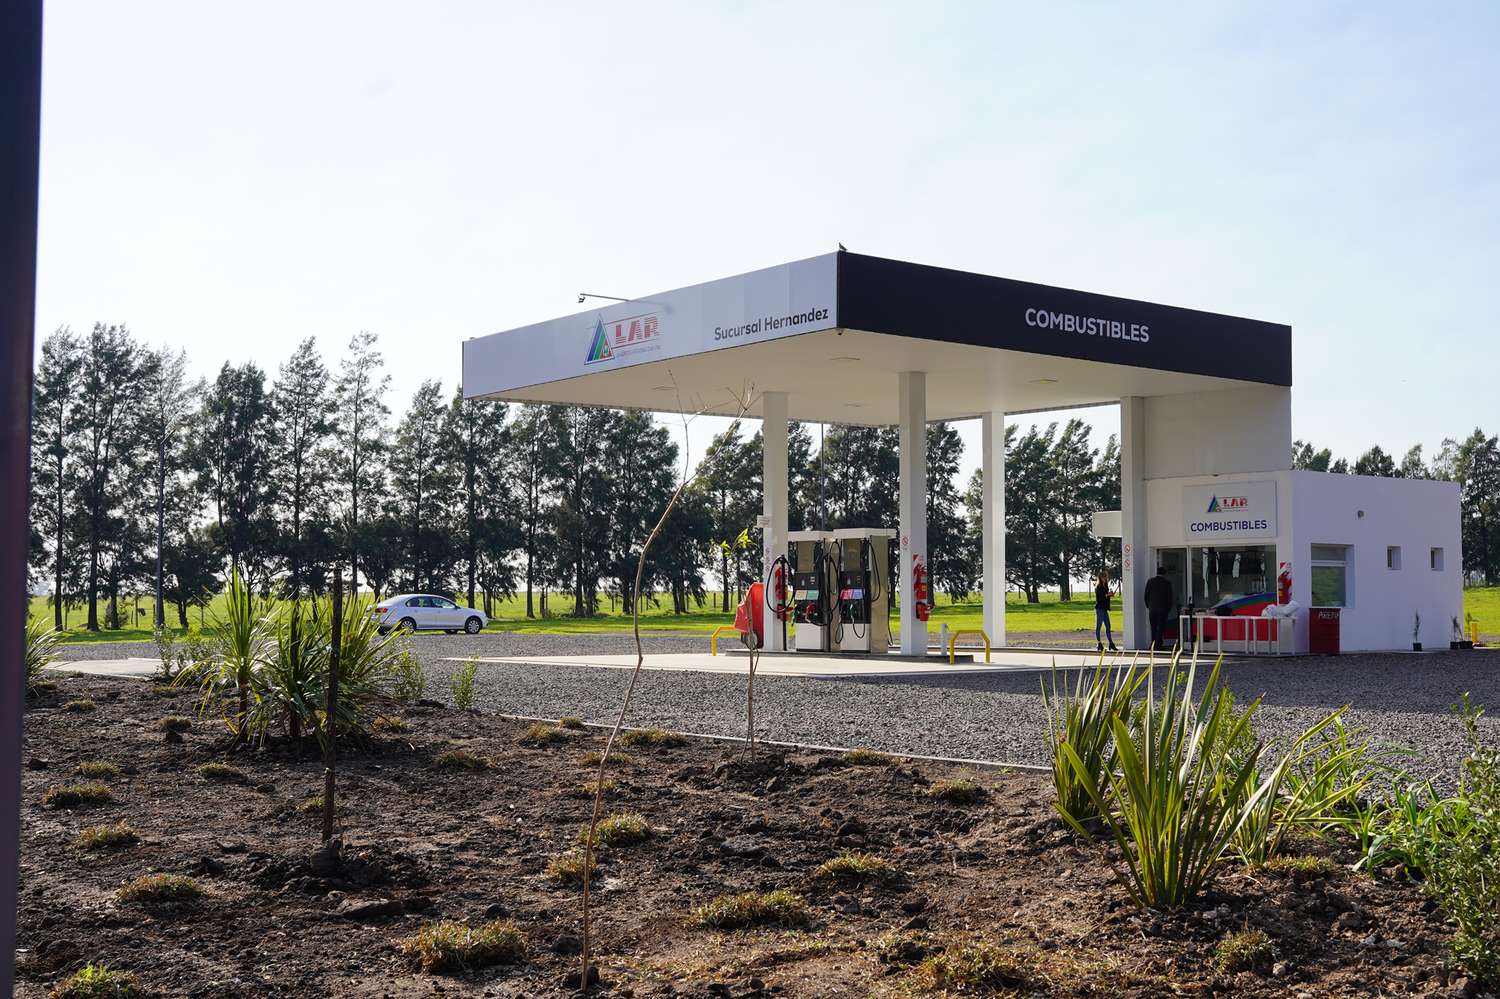 LAR inauguró un nuevo expendio de combustibles en Hernández